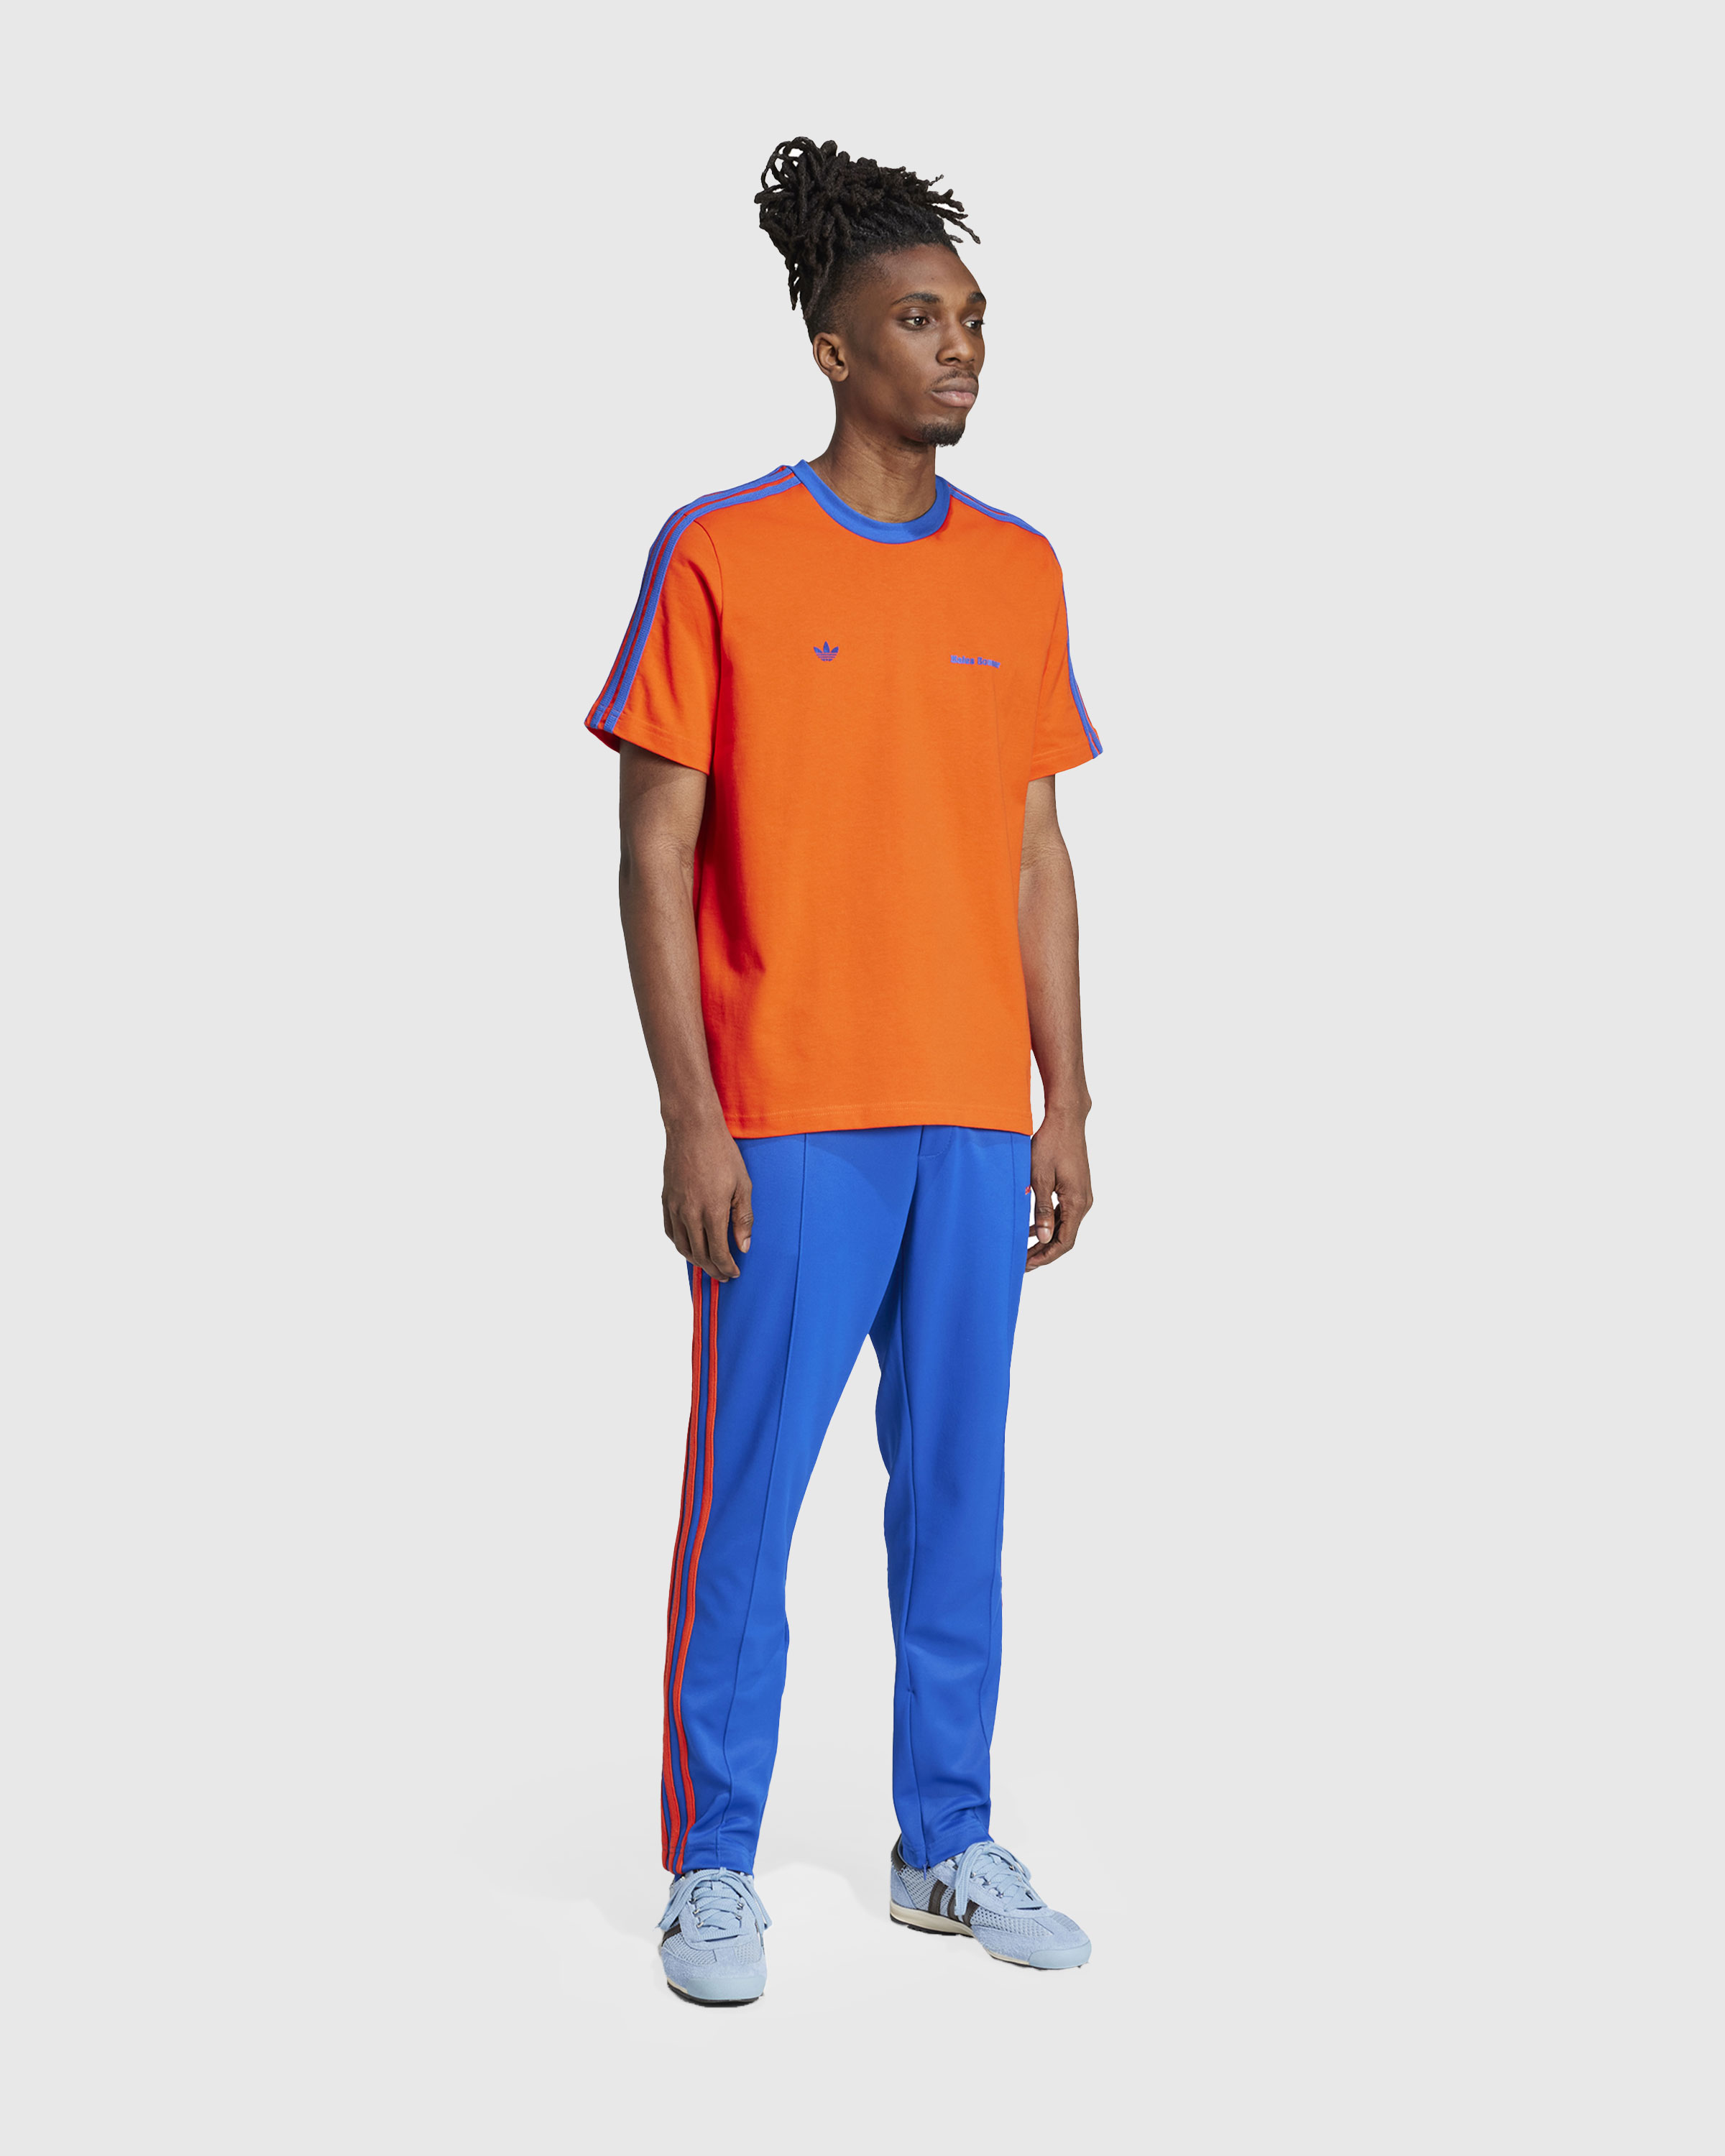 Adidas x Wales Bonner – Short-Sleeve Tee Bold Orange/Team Royal Blue - T-Shirts - Orange - Image 3